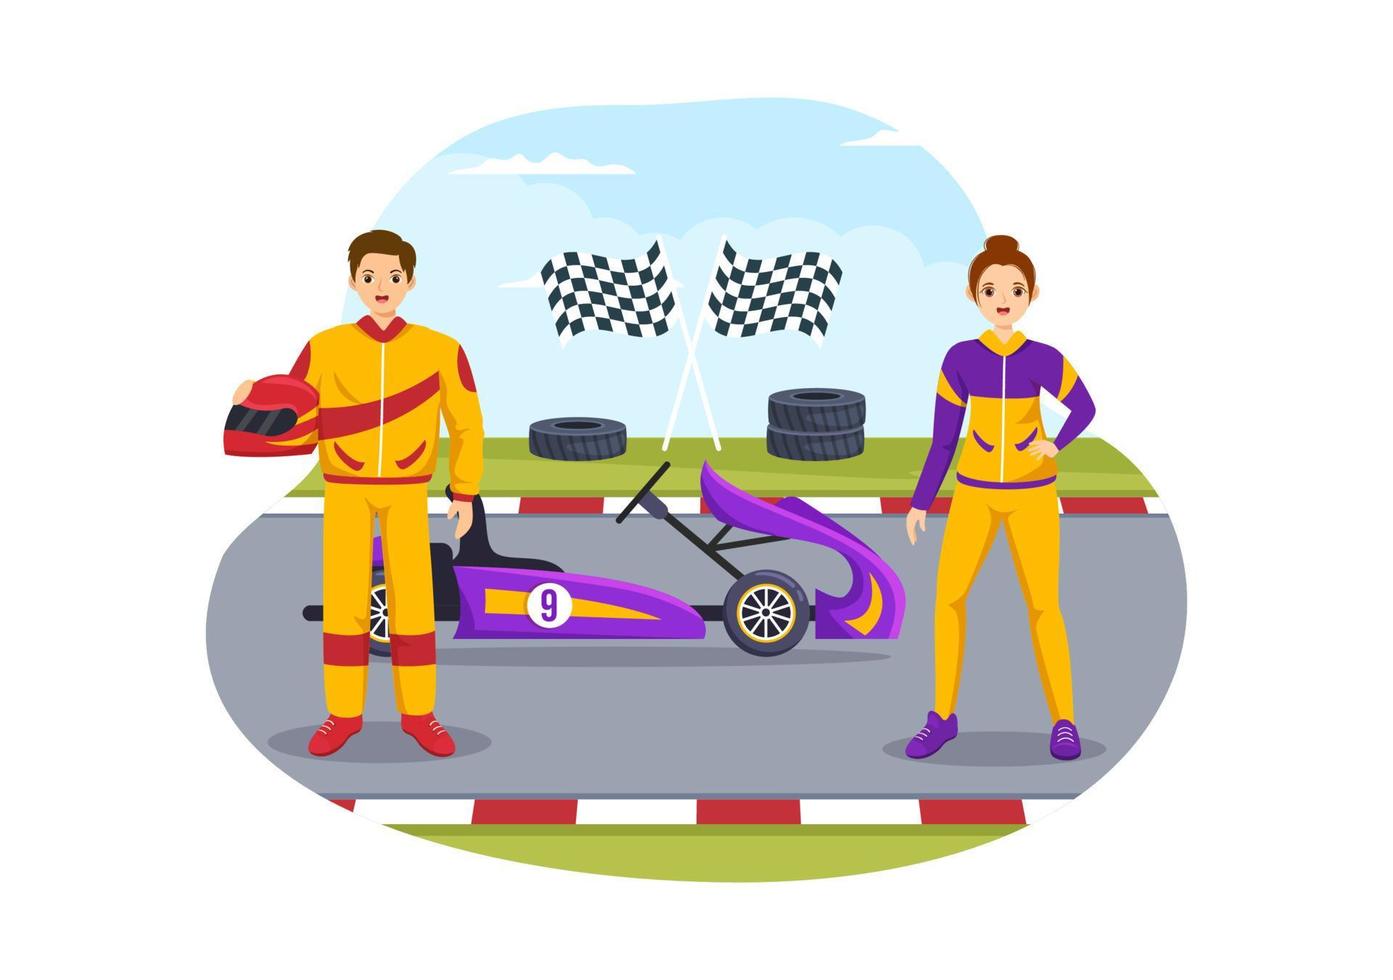 sport de karting avec jeu de course kart ou mini voiture sur une petite piste de circuit en illustration de modèle dessiné à la main de dessin animé plat vecteur